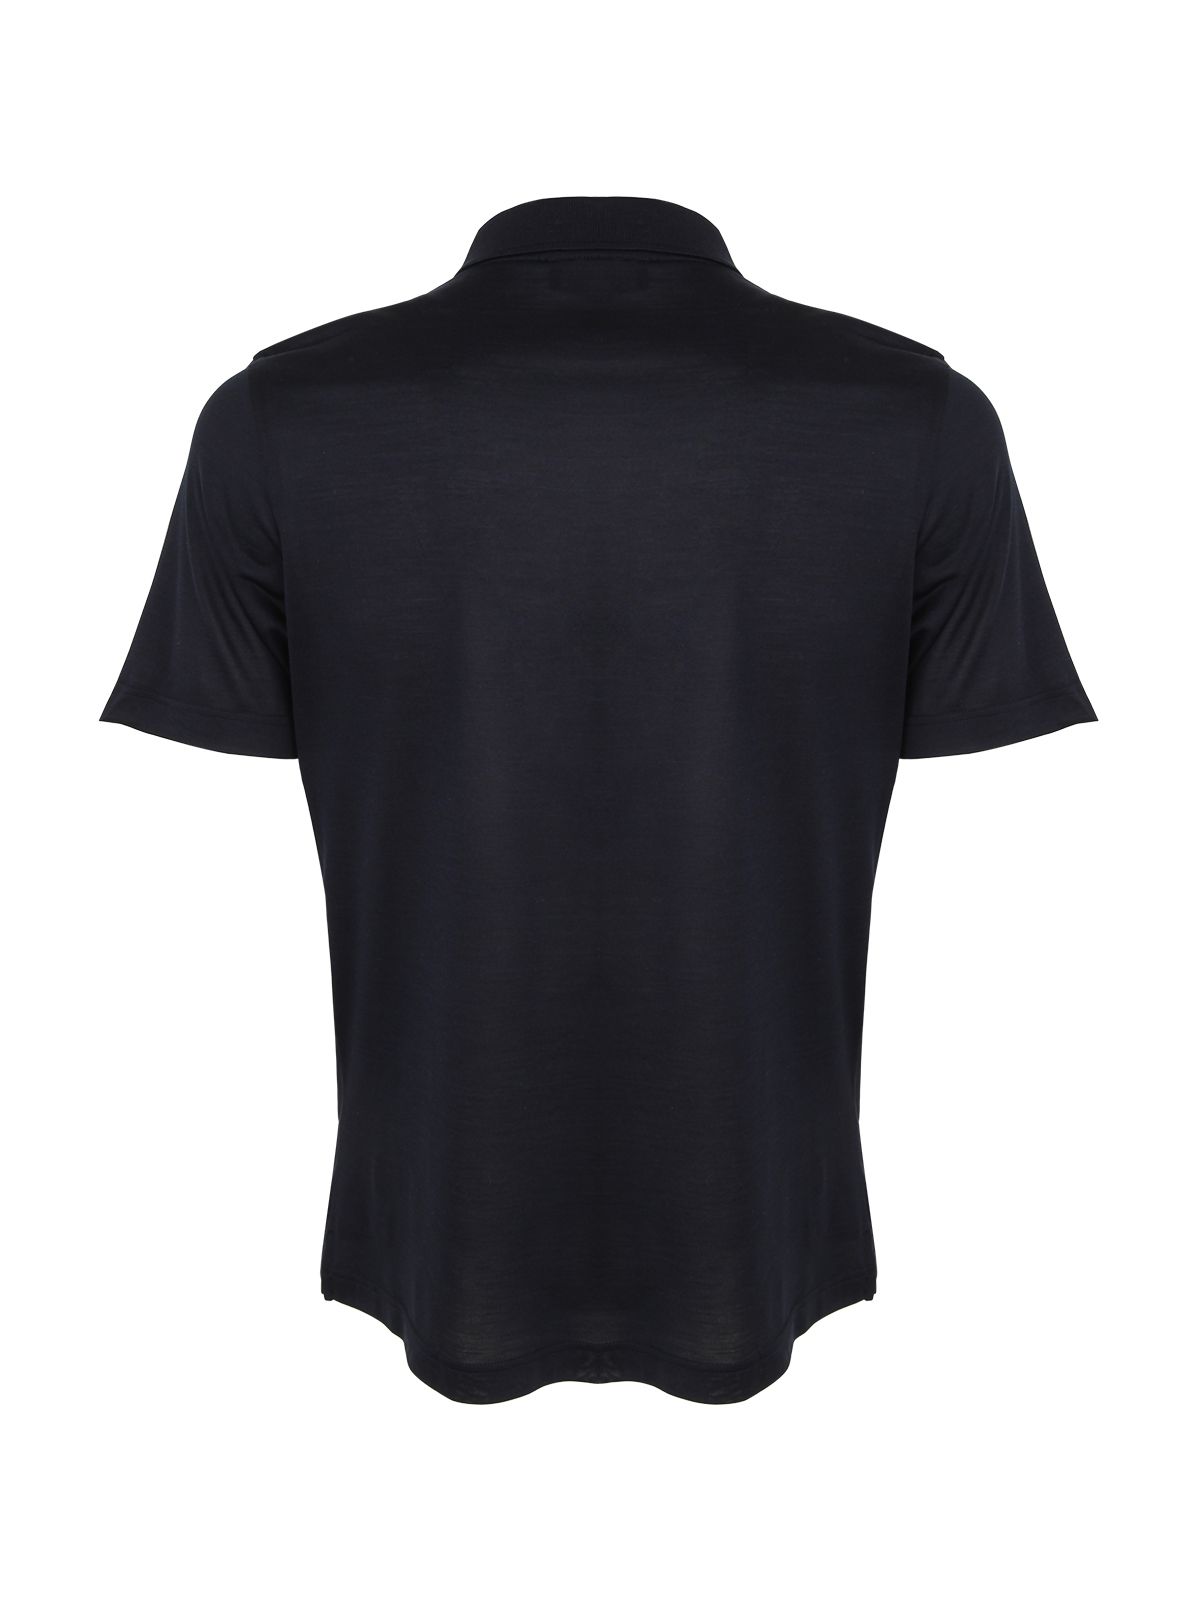 Shop Barba Napoli Silk Polo Shirt For Men